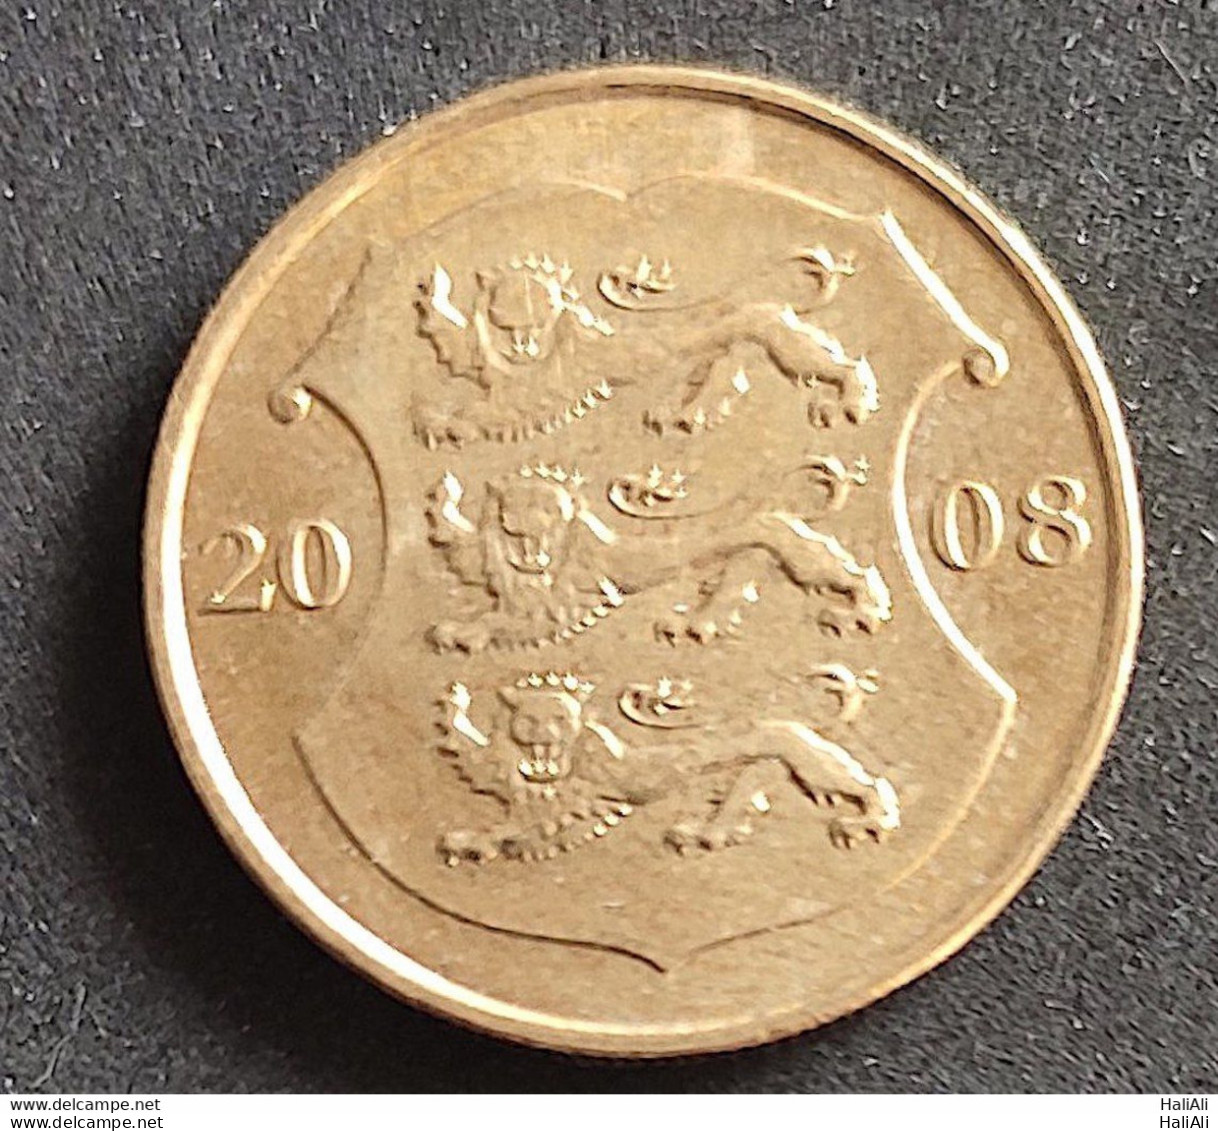 Coin Estonia 2008 1 Kroon 1 - Estland